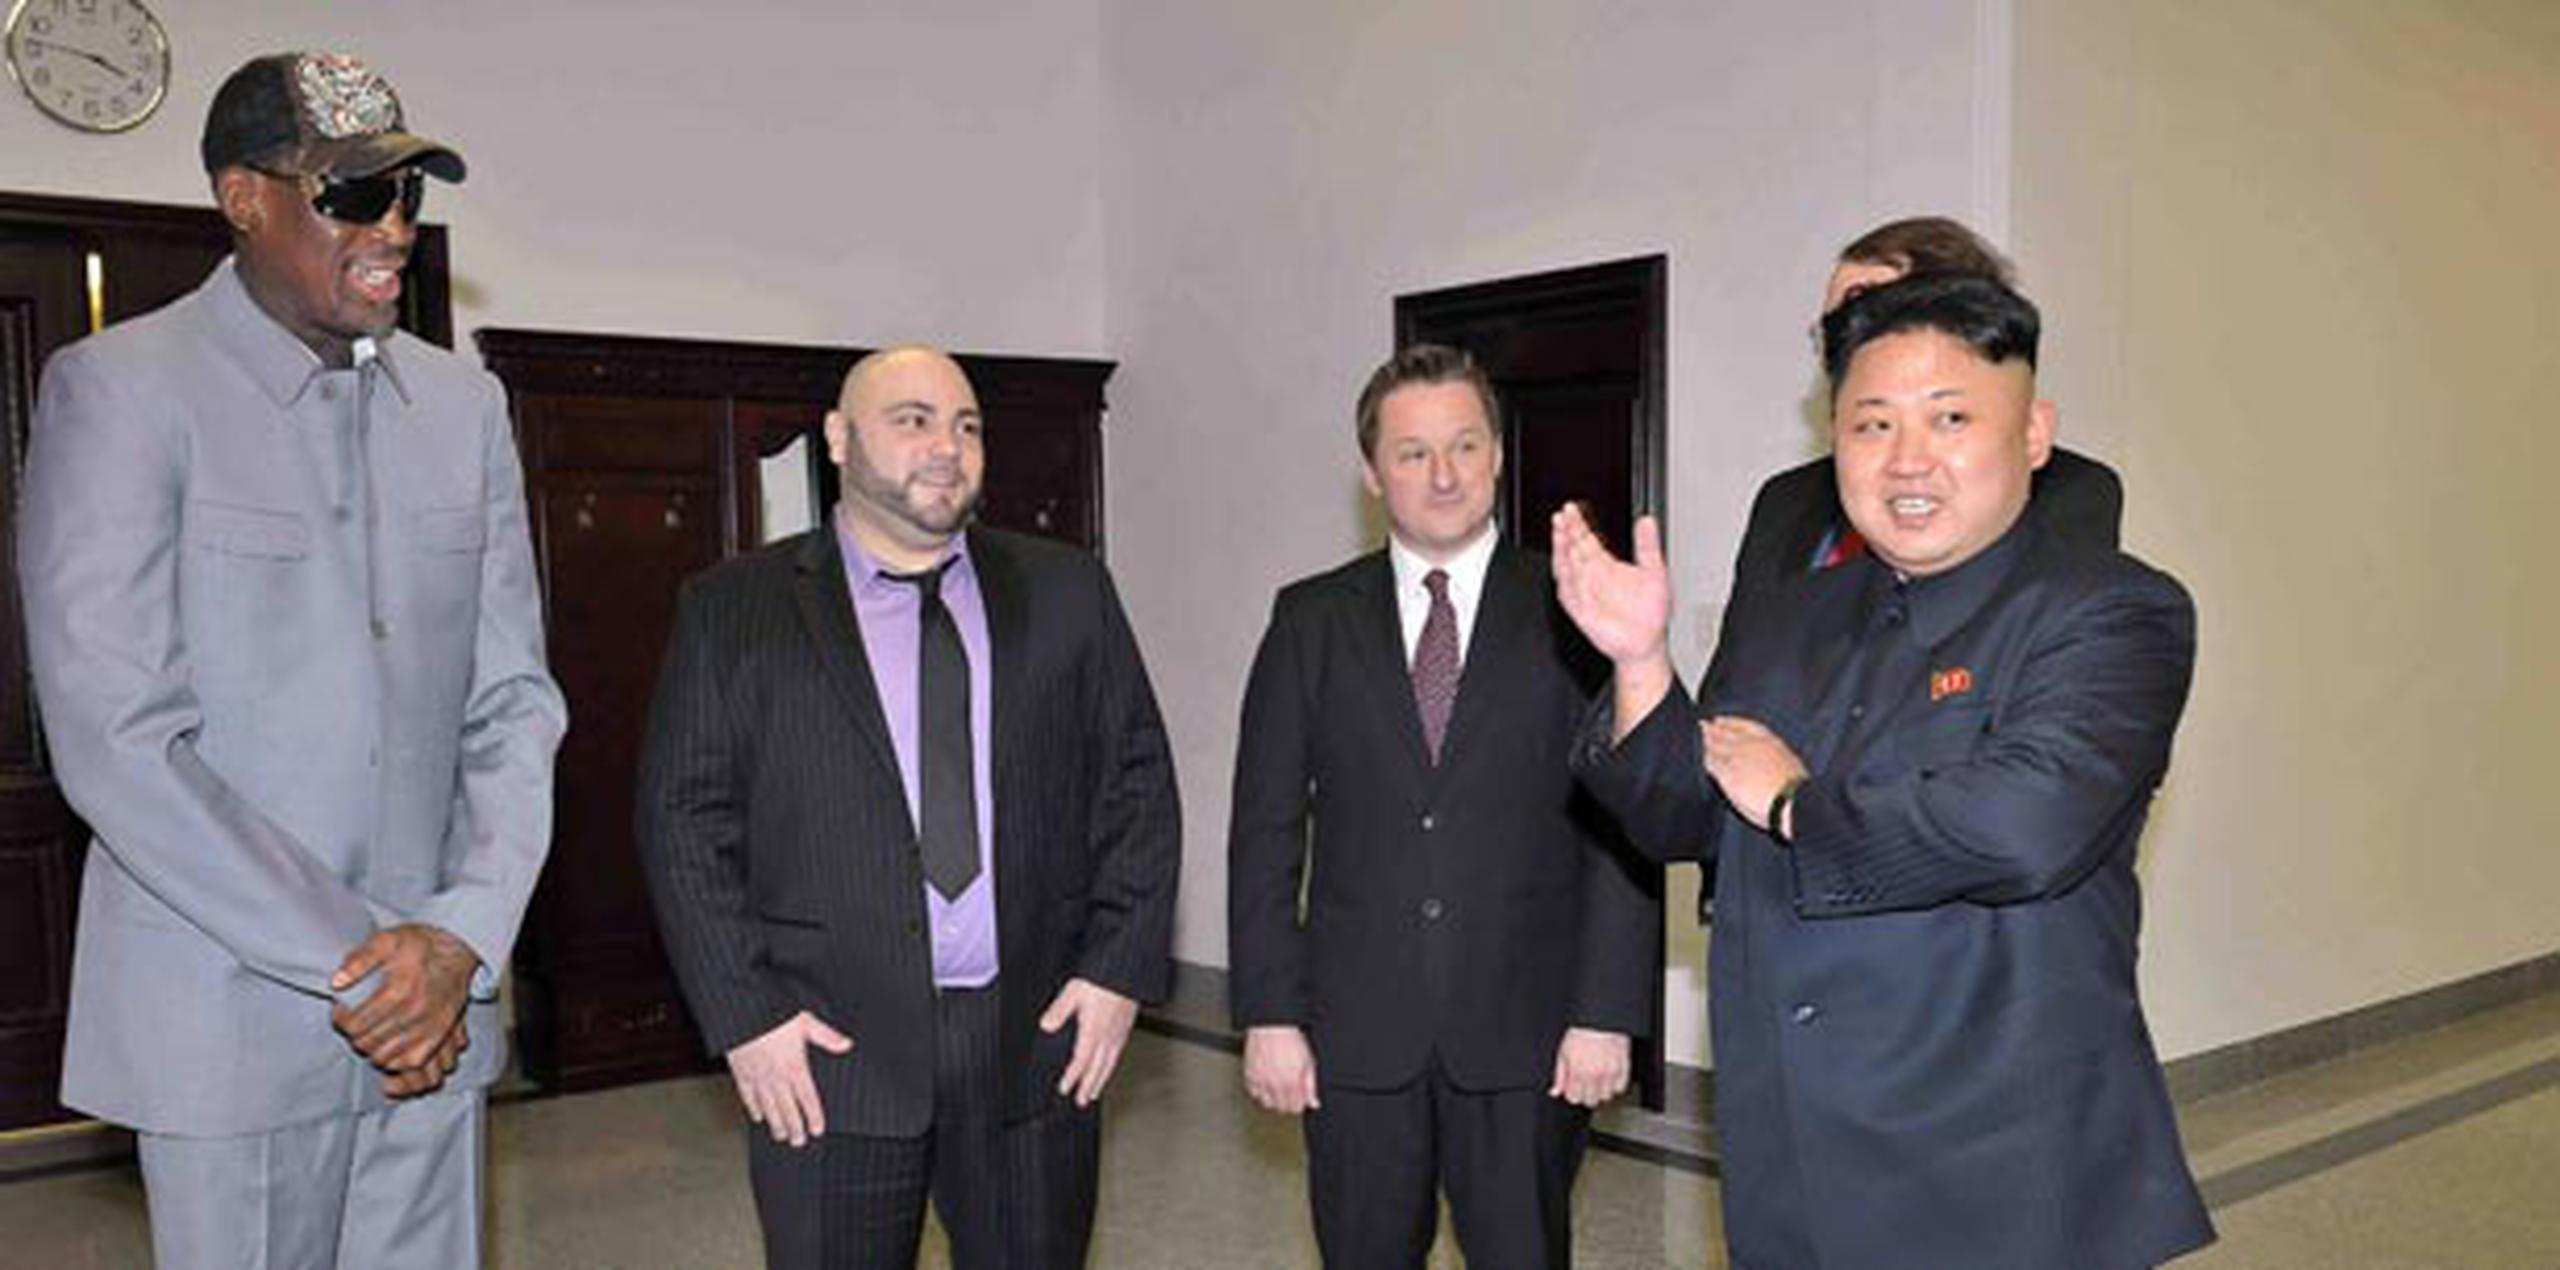 Dennis Rodman es el estadounidense de mayor perfil en reunirse con Kim Jong Un.    (EFE/KCNA)